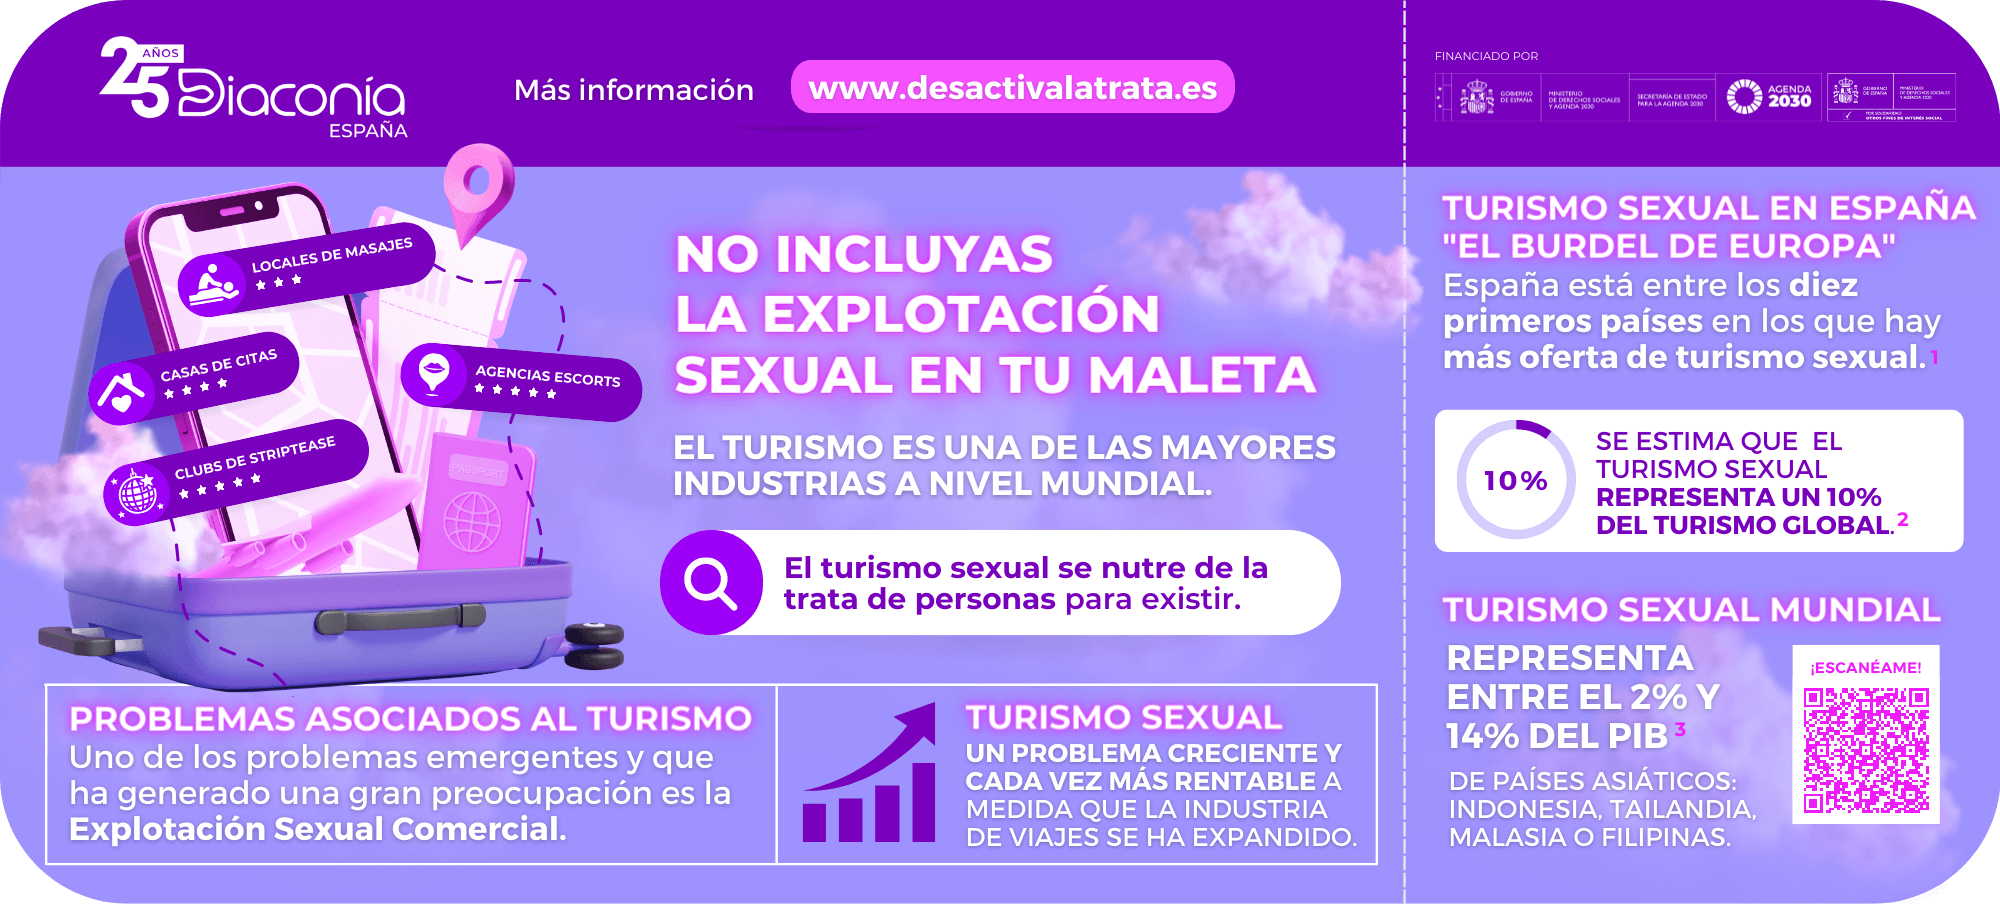 Infografía Campaña Turismo sexual: No incluyas la explotación sexual en tu maleta anverso